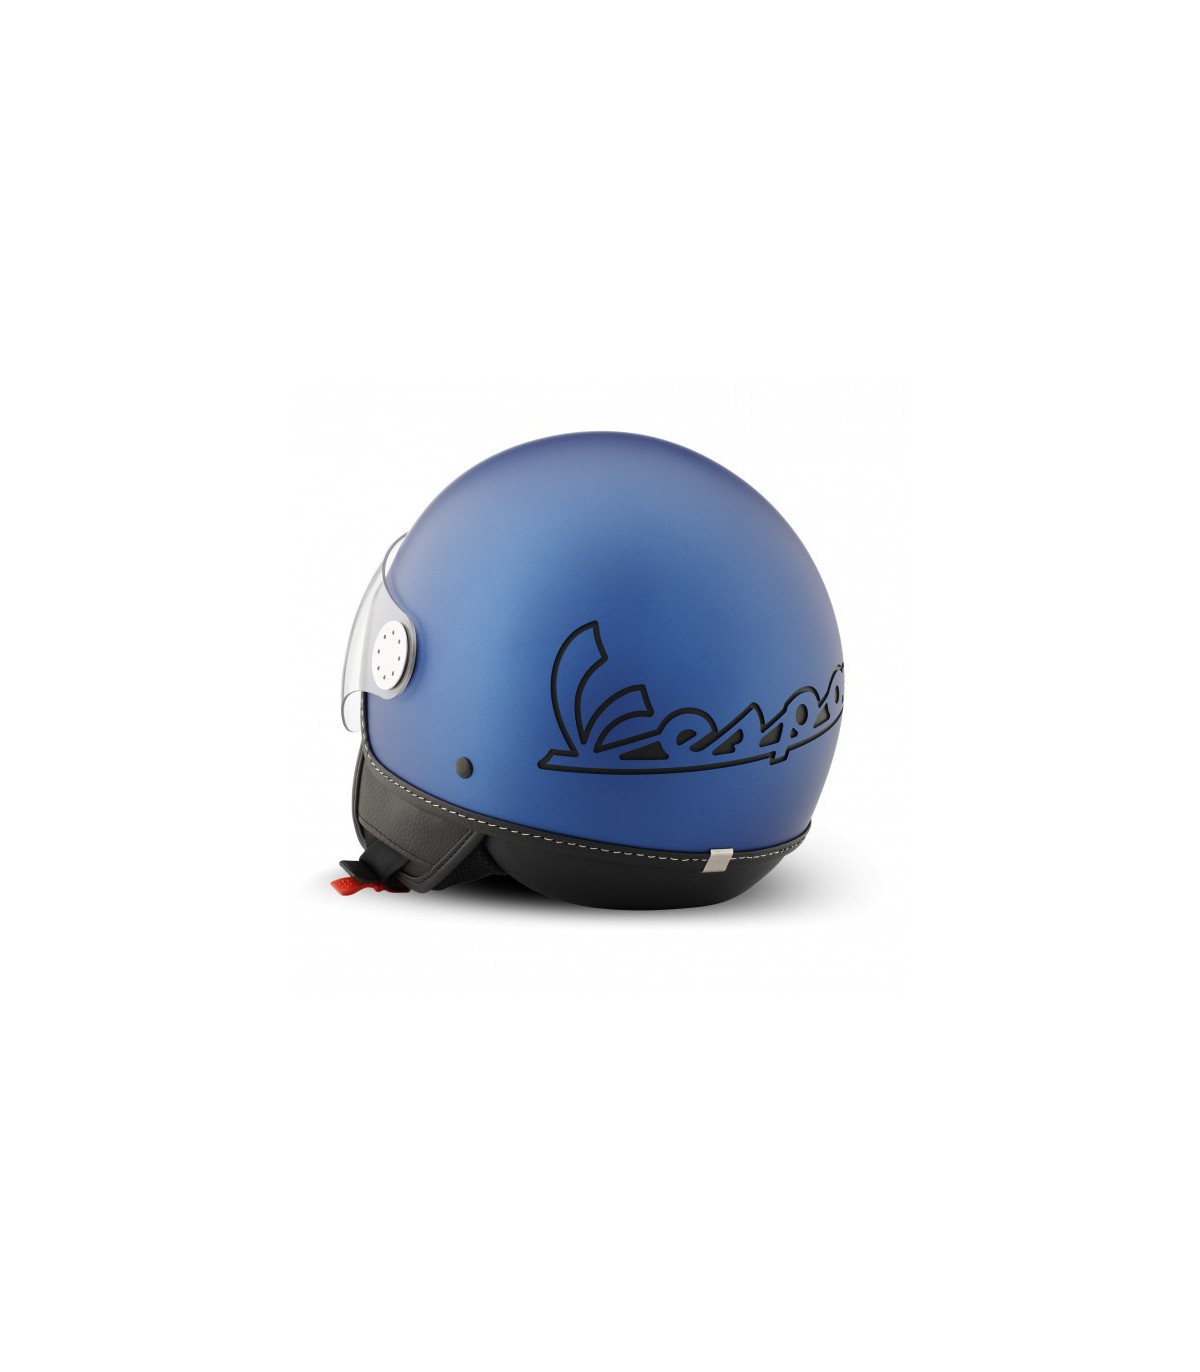 Casco Vespa Visor 3.0 color azul. Talla XS